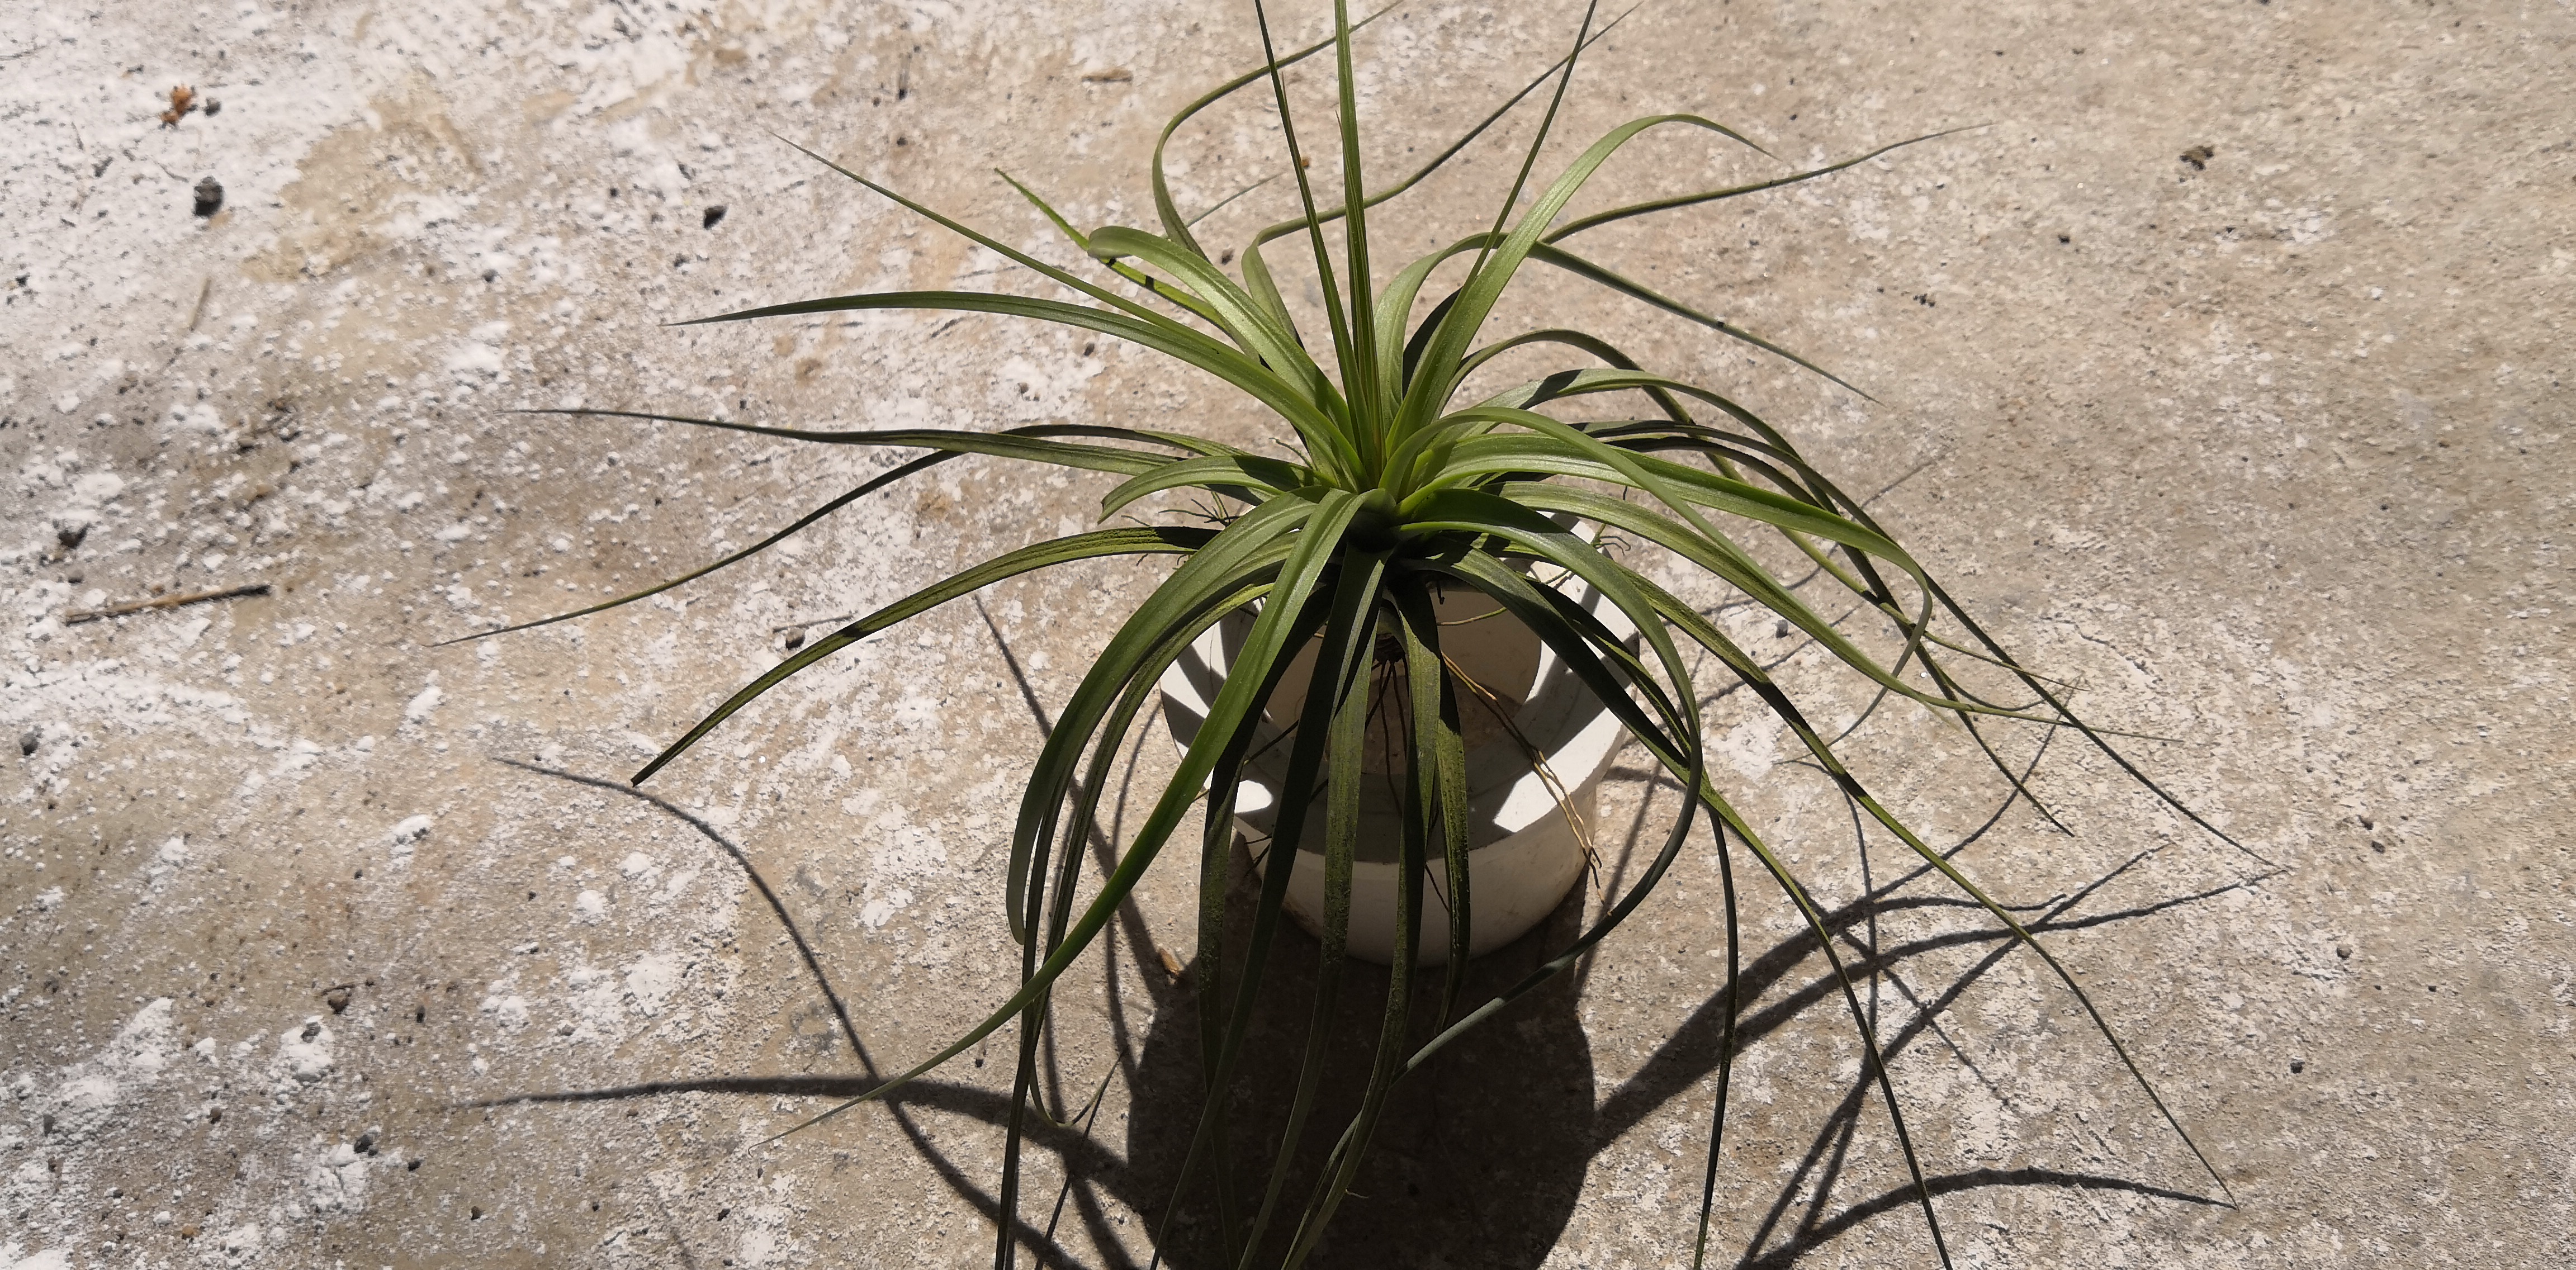 硬叶铁兰 懒人植物空气 硬叶铁兰 室内装饰品 气培养植物图片